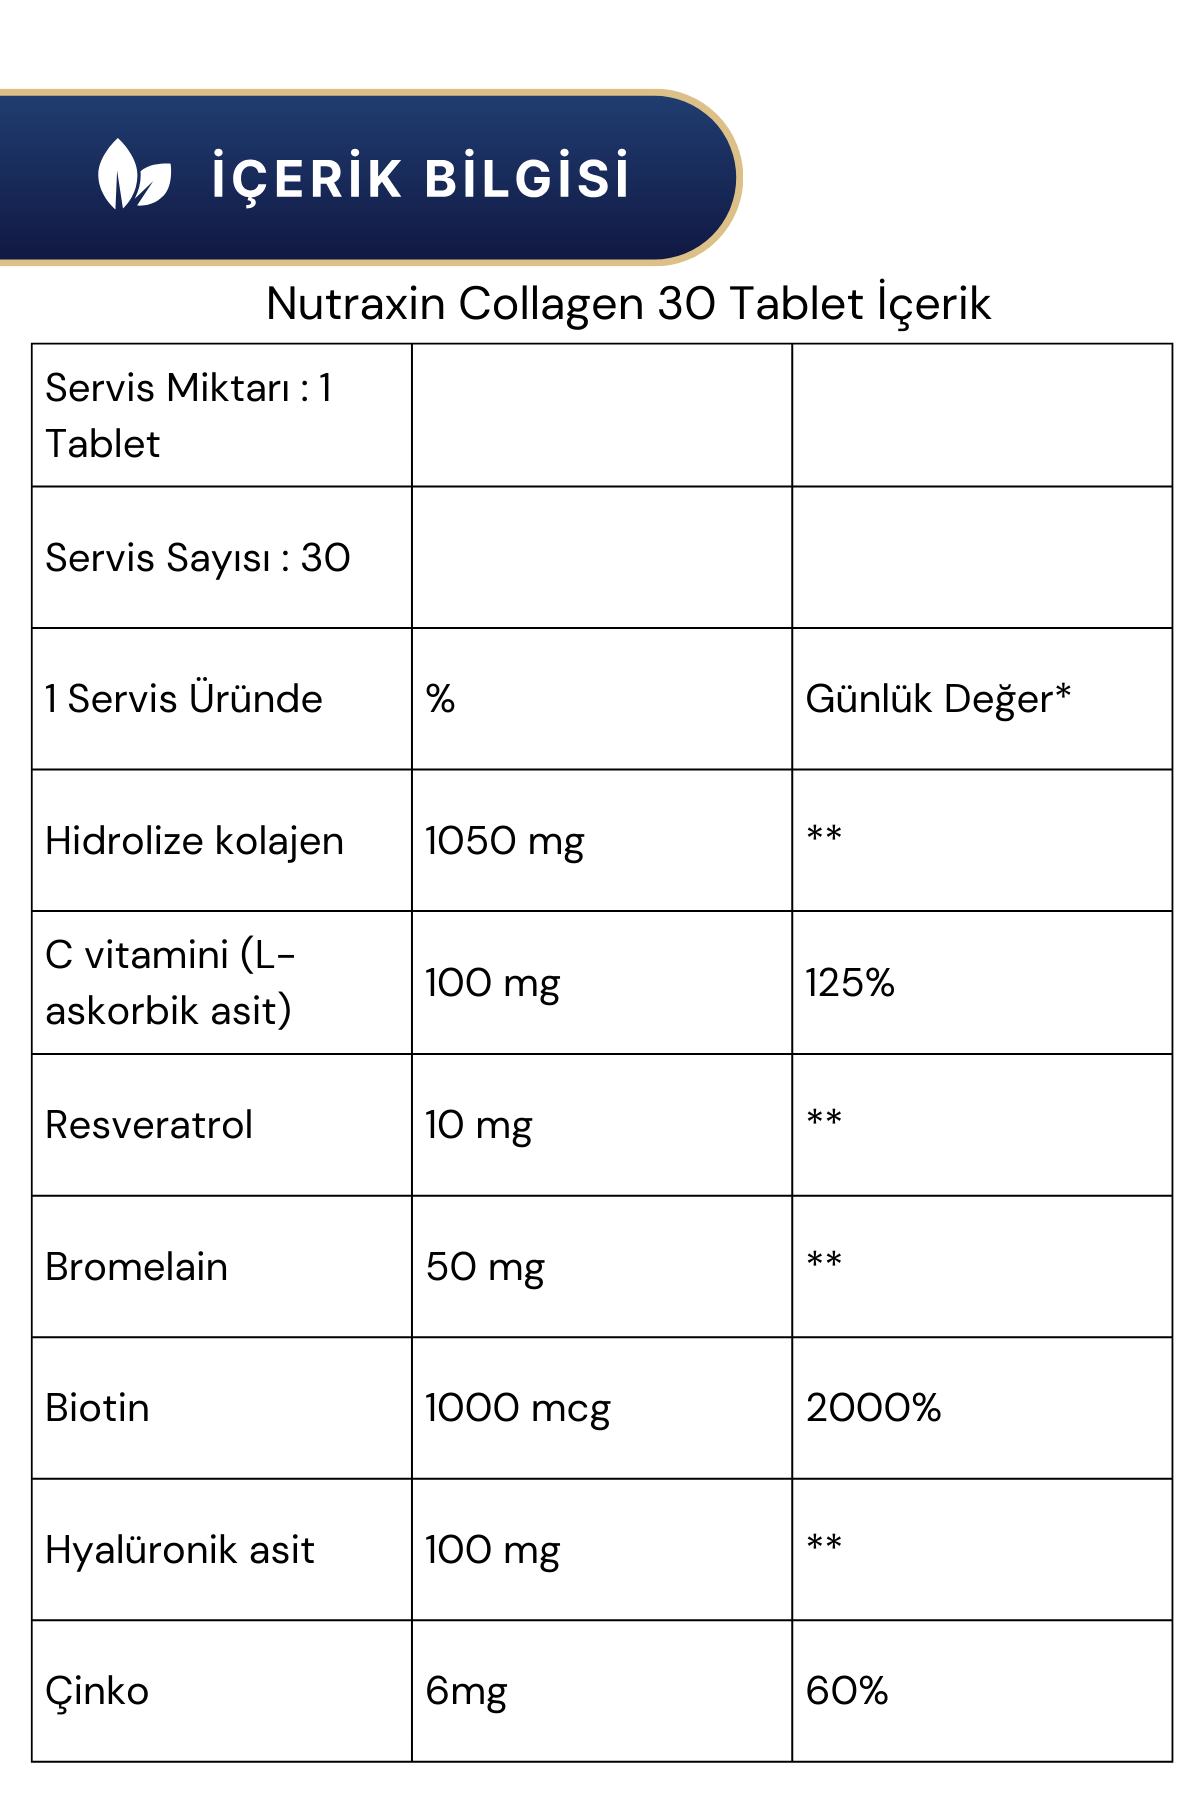 Nutraxin Collagen 30 Tablet & Omega-3 2000 Mg 60 Softgel